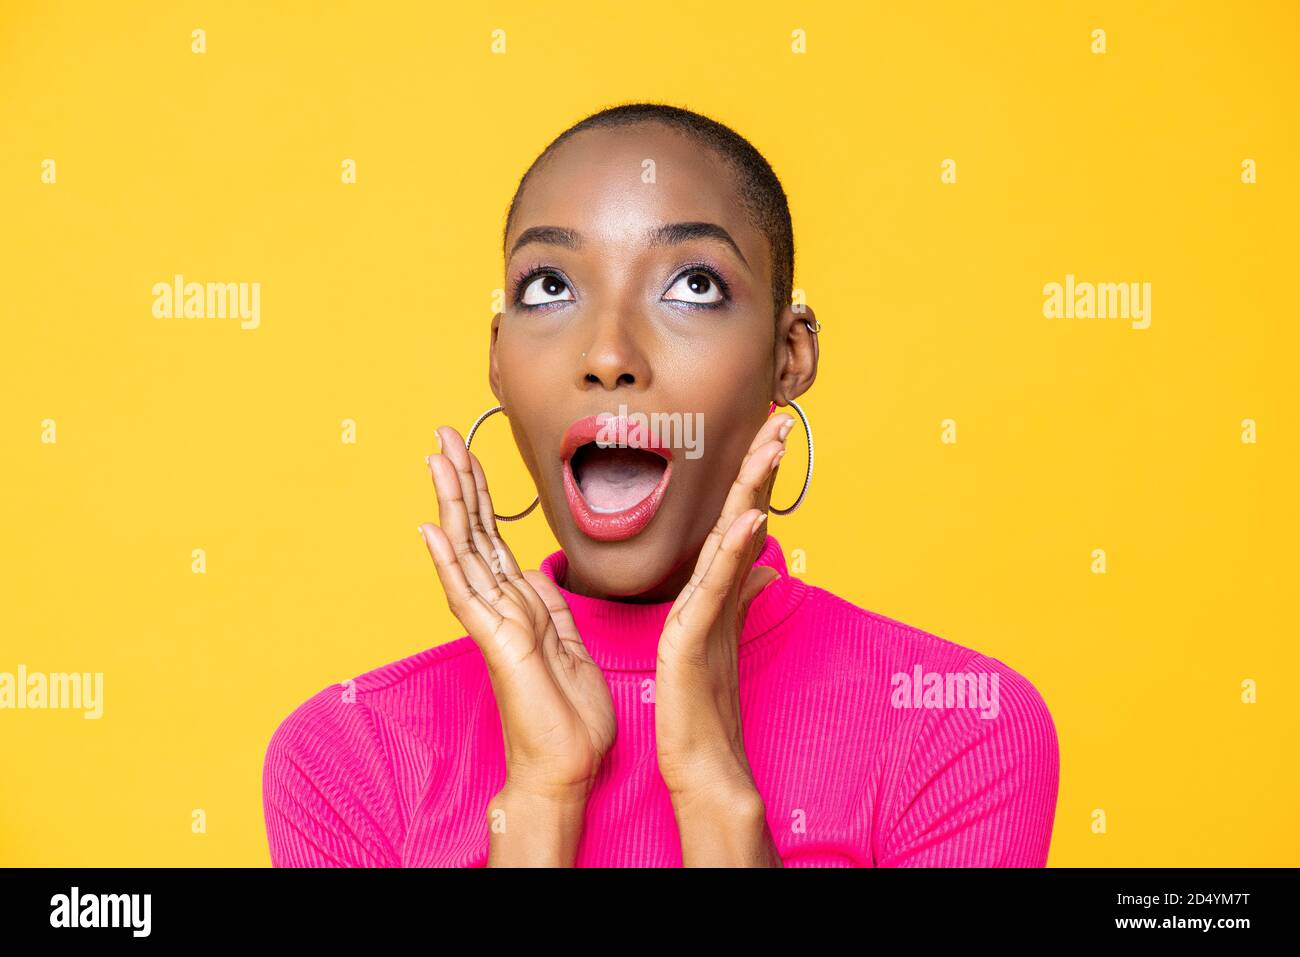 Nahaufnahme Porträt der überrascht junge afroamerikanische Frau suchen Nach oben mit den Händen rund um den Mund isoliert auf Studio gelb Hintergrund Stockfoto